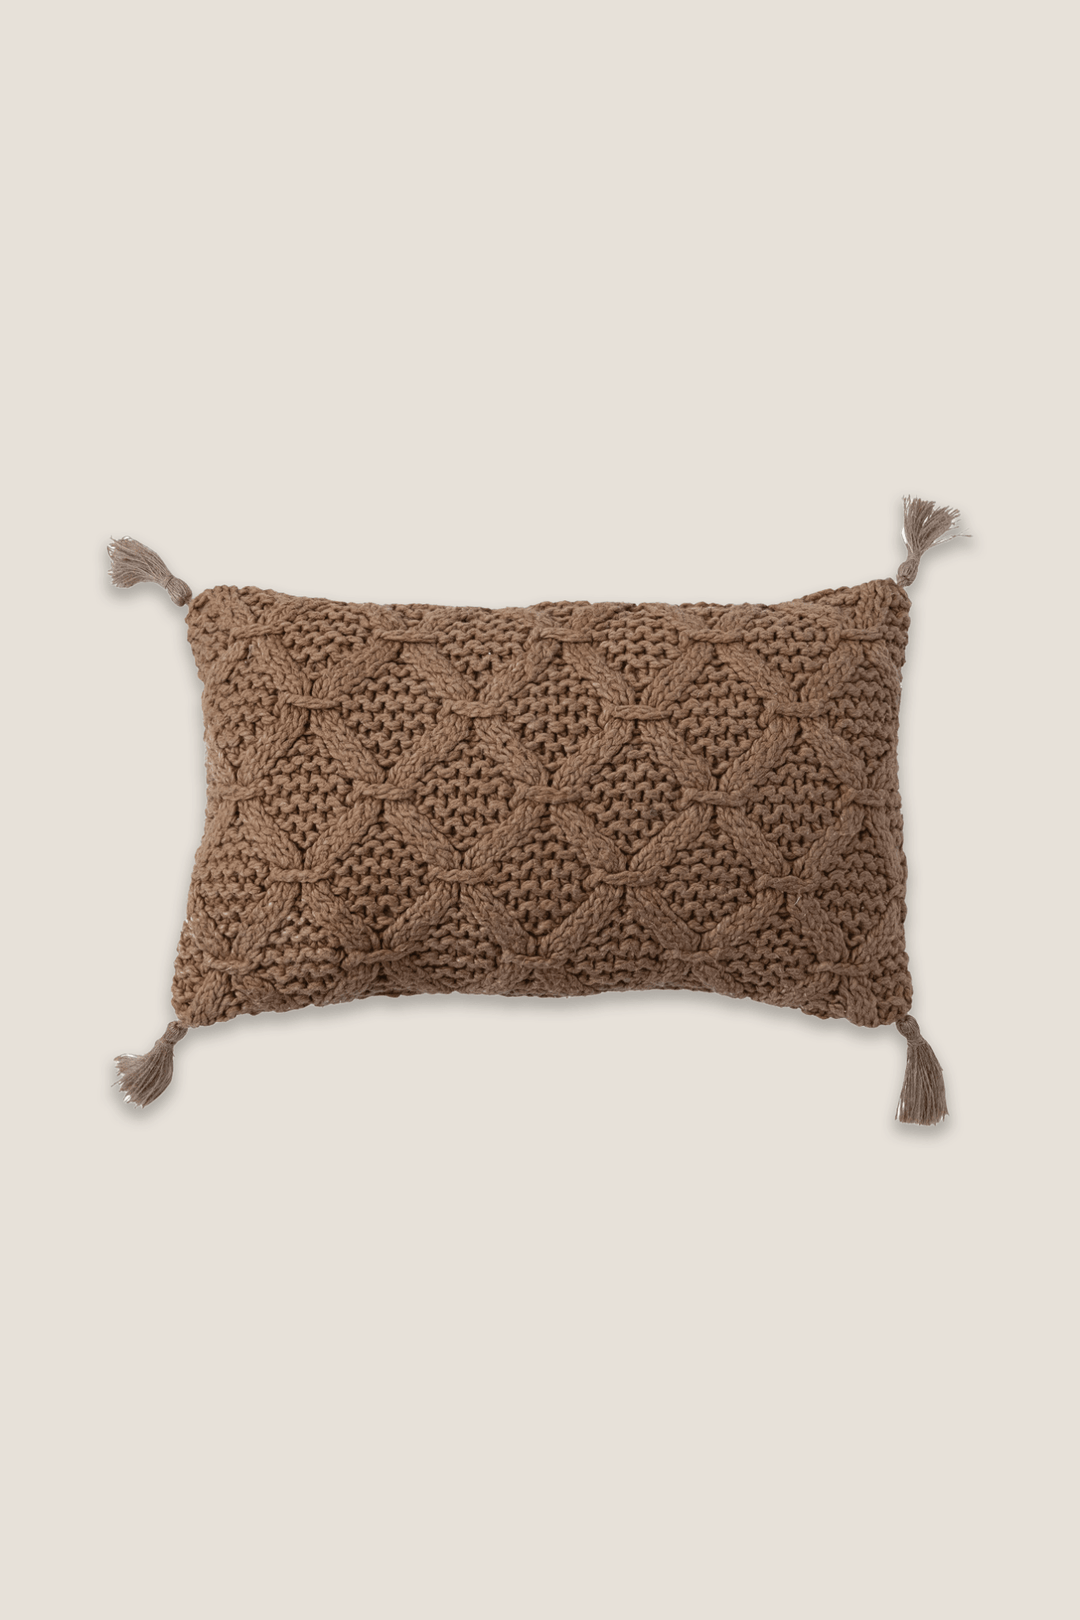 Camel Woven Lumbar Pillow - Heyday